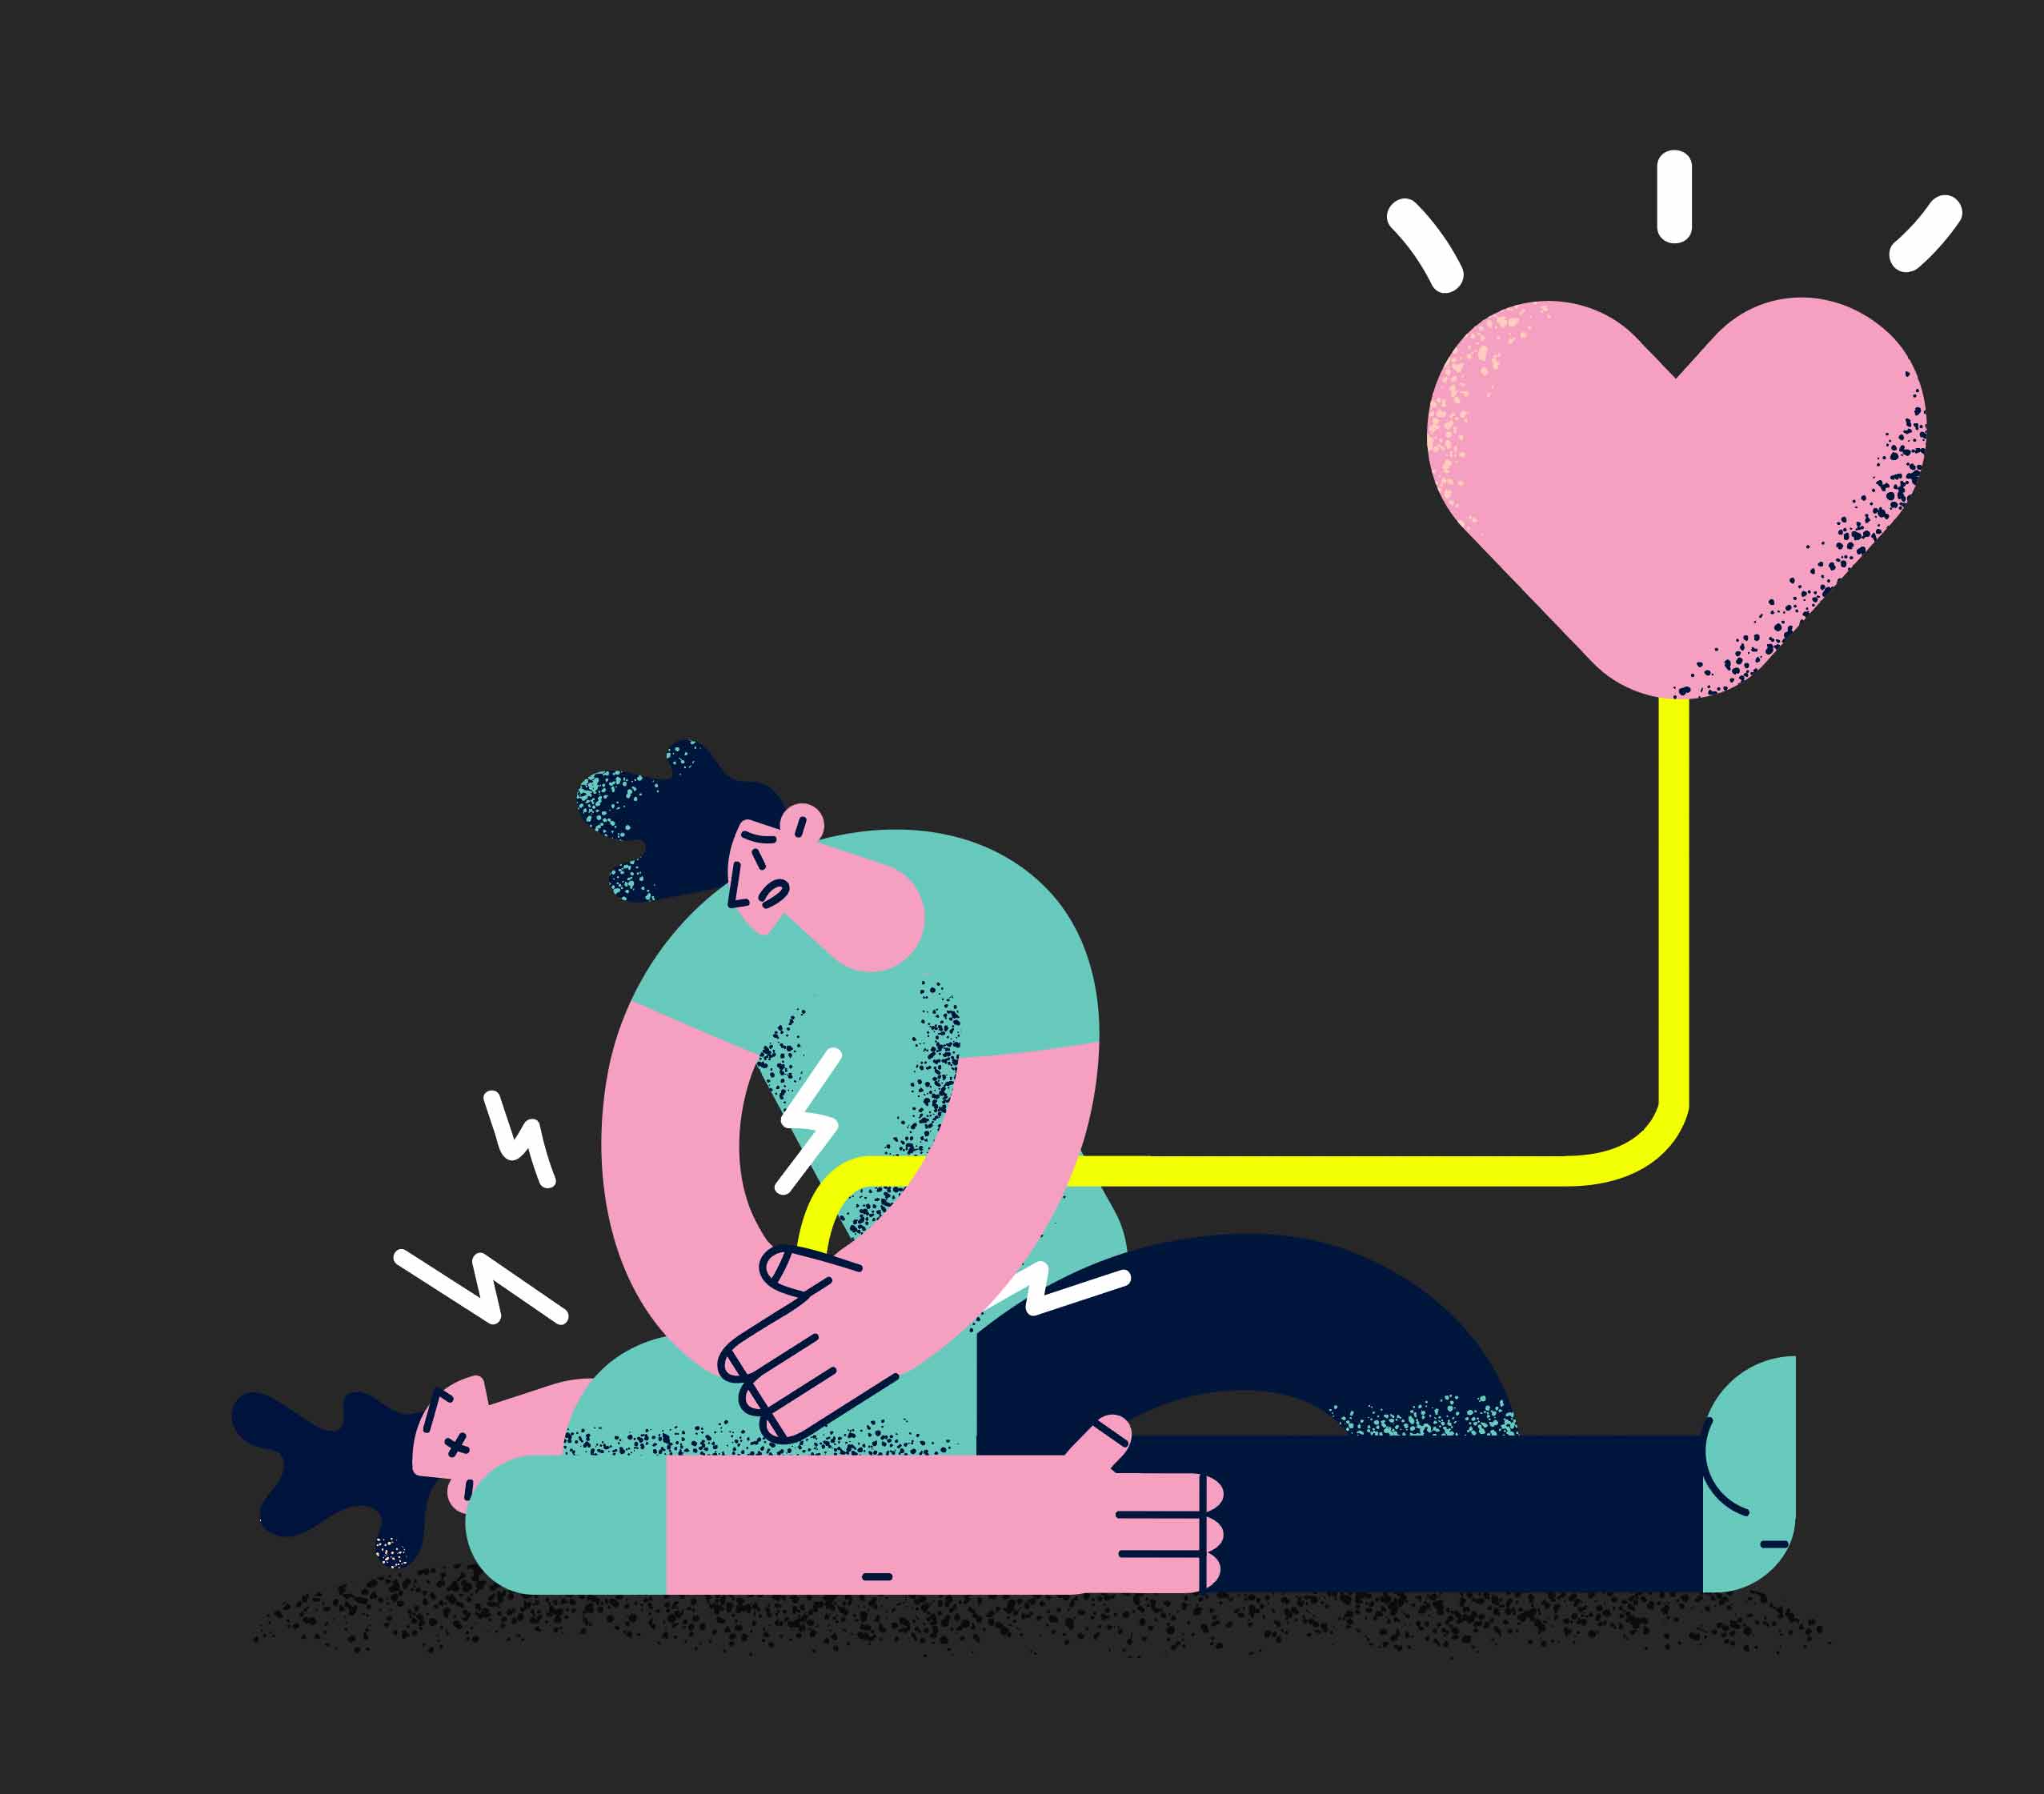 Illustration of man applying defibrillator to man having a heart attack